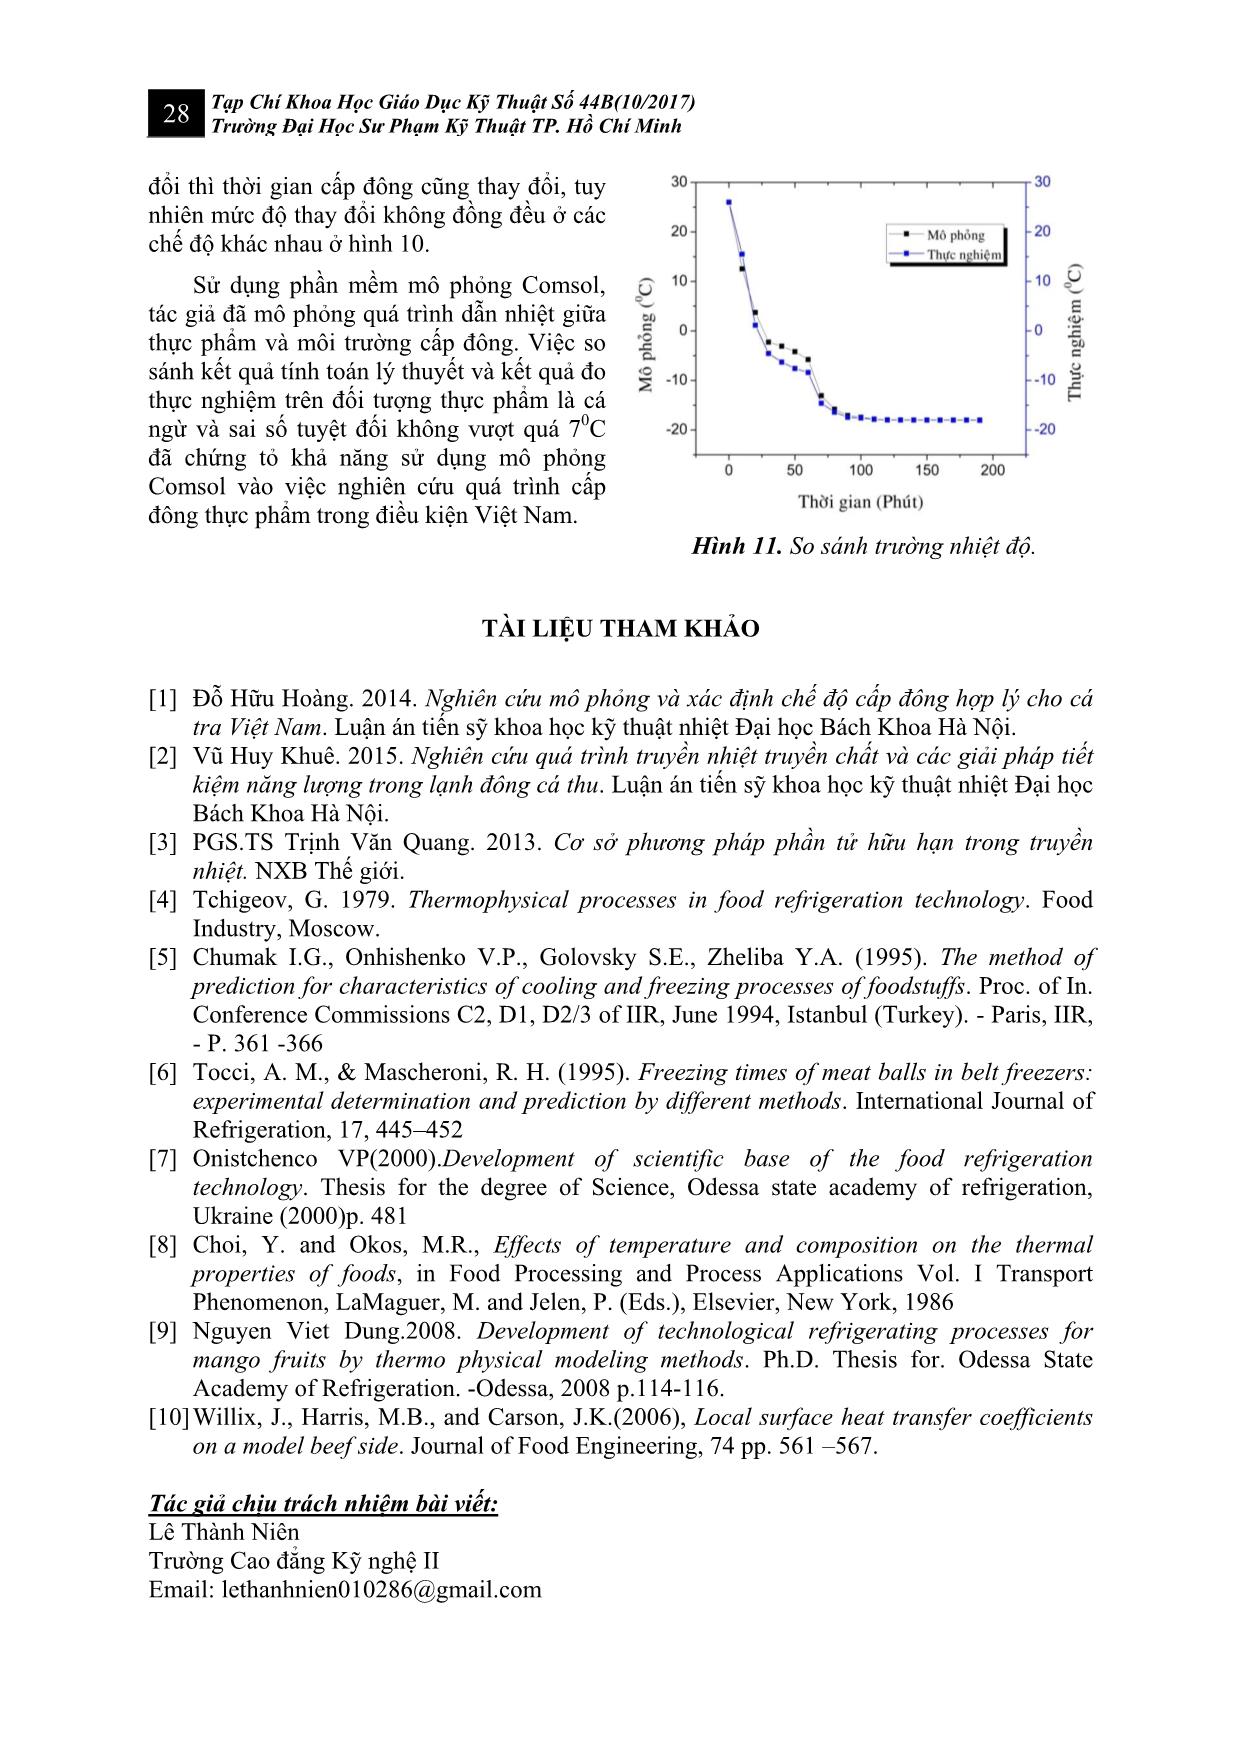 Mô phỏng quá trình truyền nhiệt cấp đông cá ngừ trong tủ lạnh 3 sao (-180C) trang 6